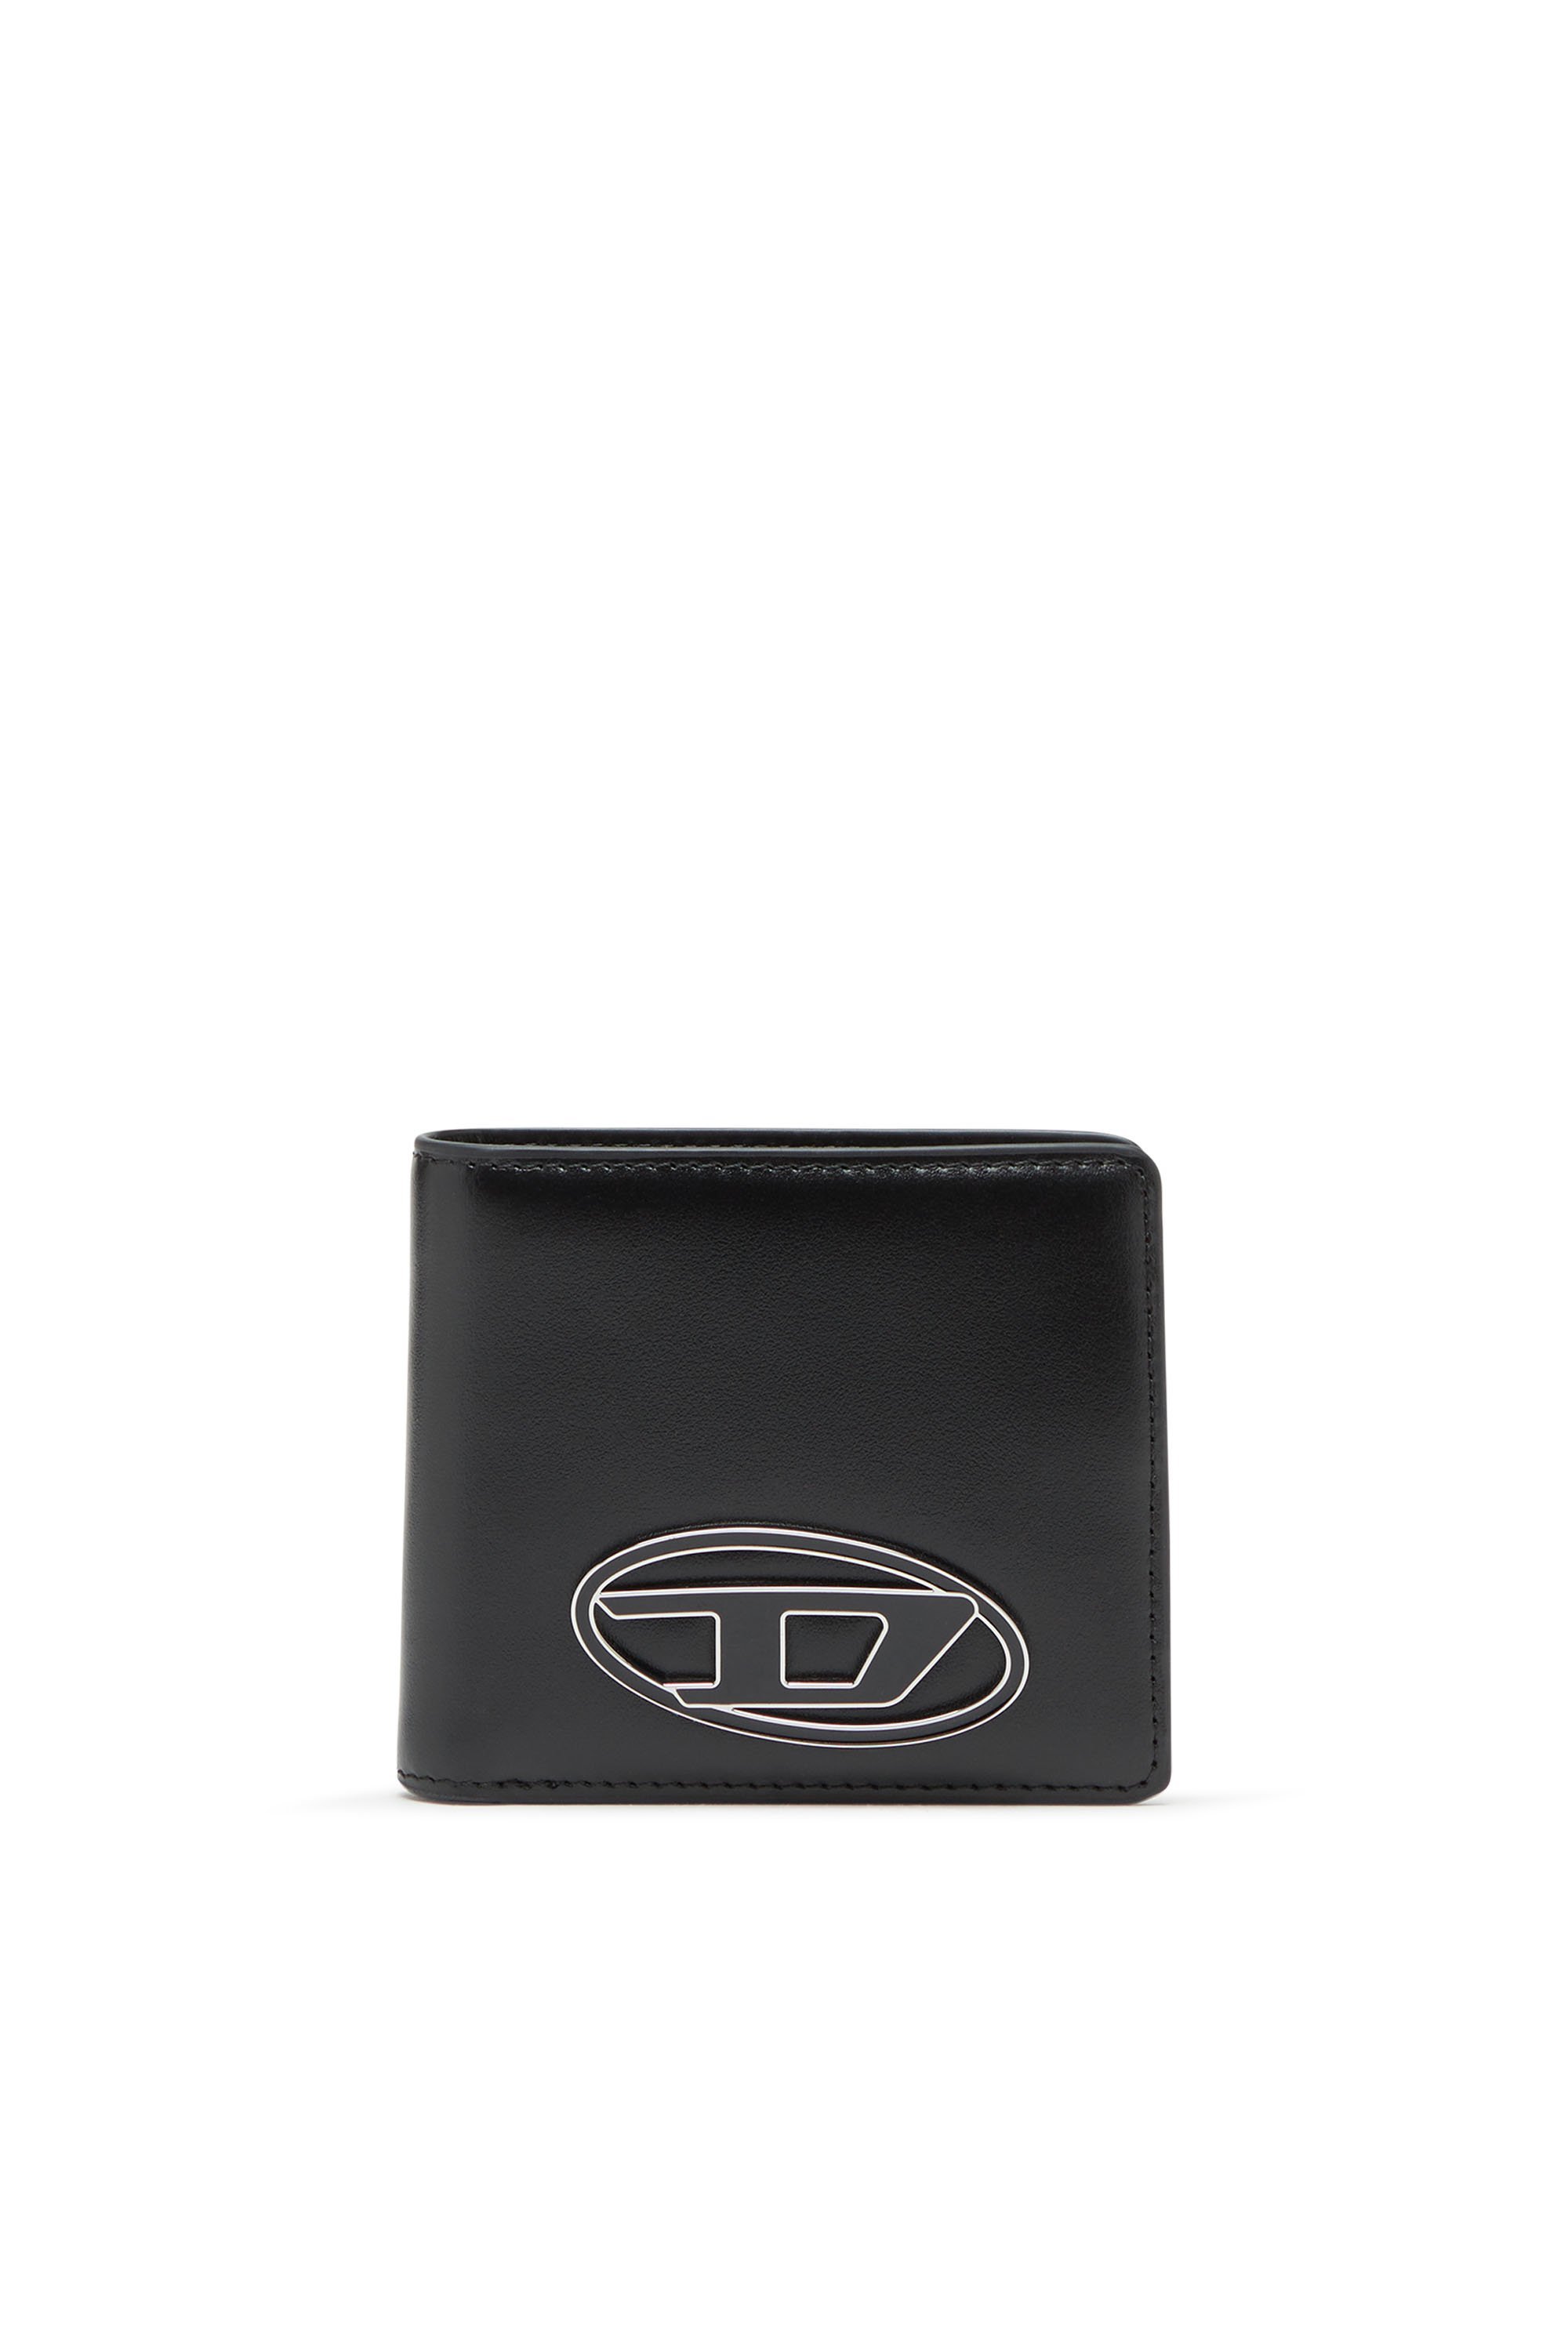 ディーゼル 財布（メンズ） DIESEL メンズ 二つ折りウォレット 1DR BI FOLD COIN S 3D ディーゼル 財布・ポーチ・ケース 財布 ブラック【送料無料】